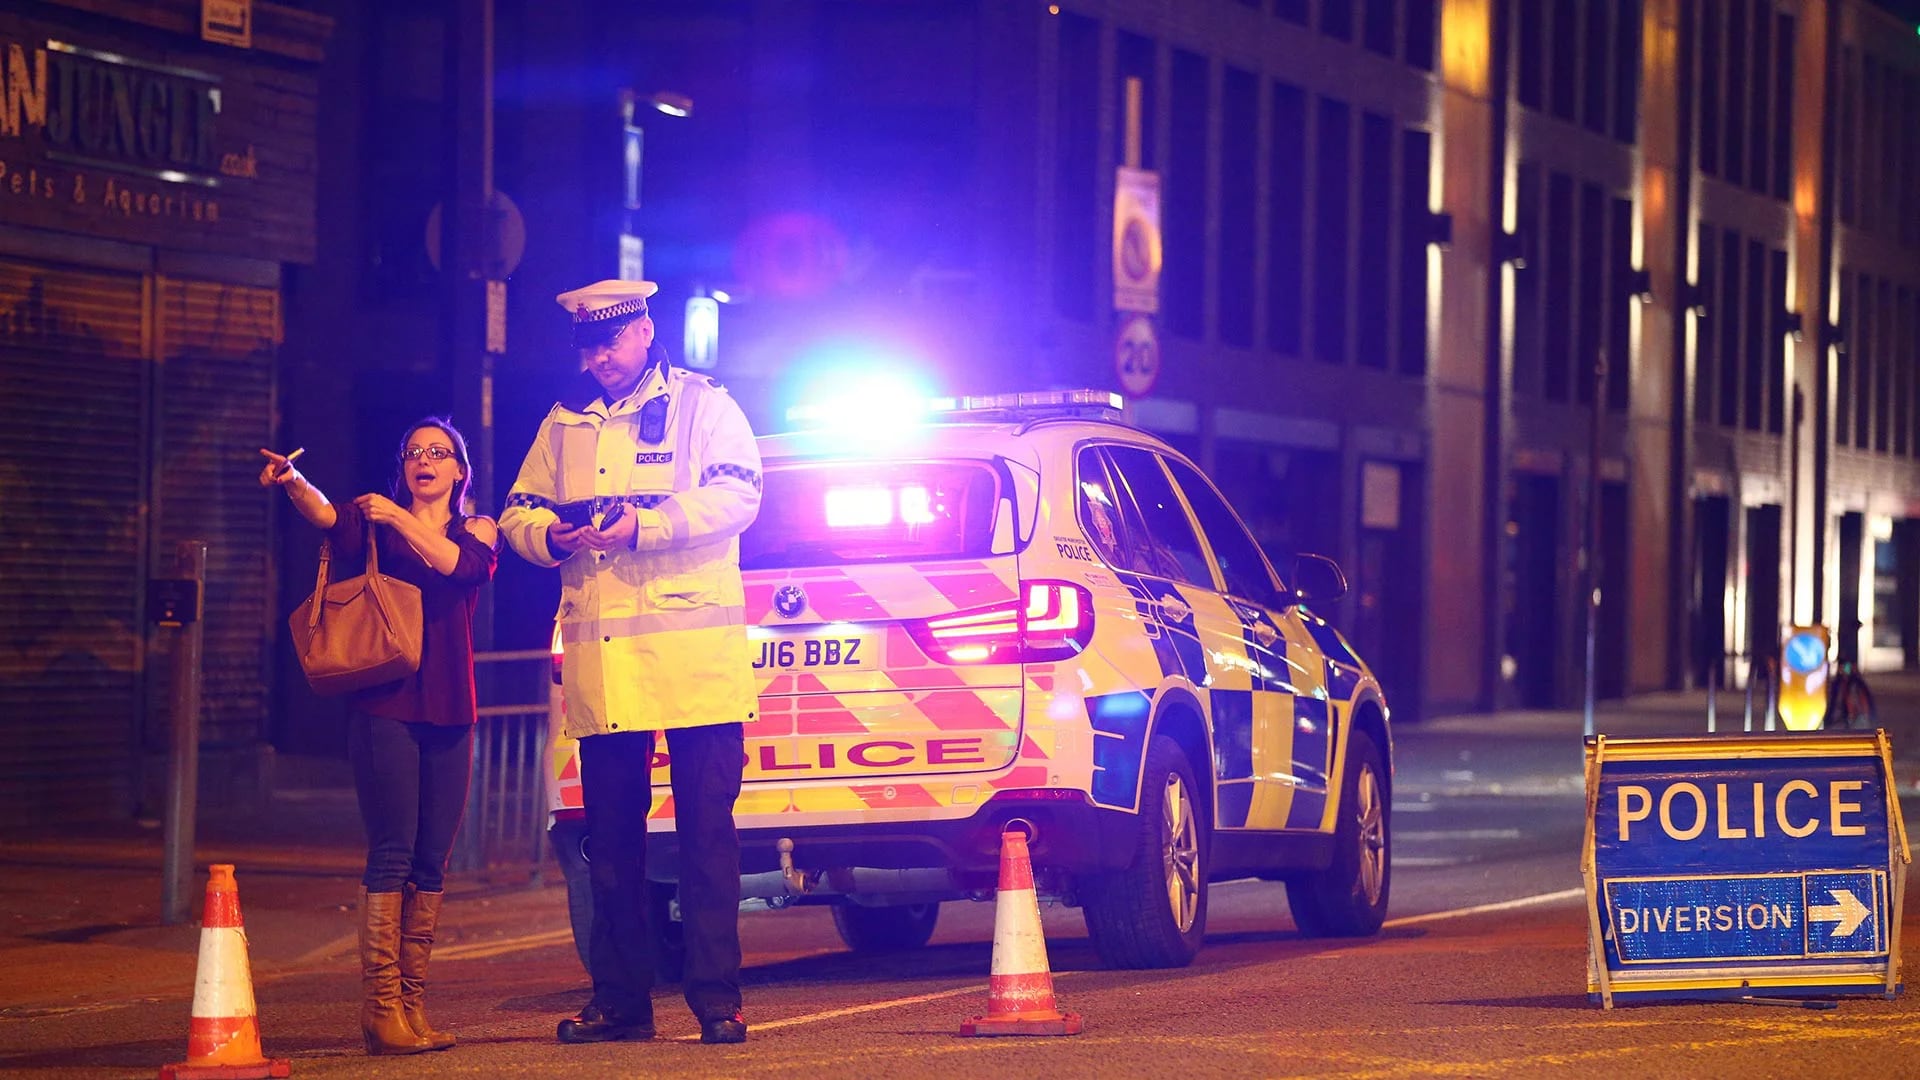 La Policía Metropolitana publicó una declaración en la que aseguran que los servicios de emergencia están respondiendo a los informes de una explosión en el Manchester Arena. “Hay una serie de muertes confirmadas y otros heridos” (Getty Images)